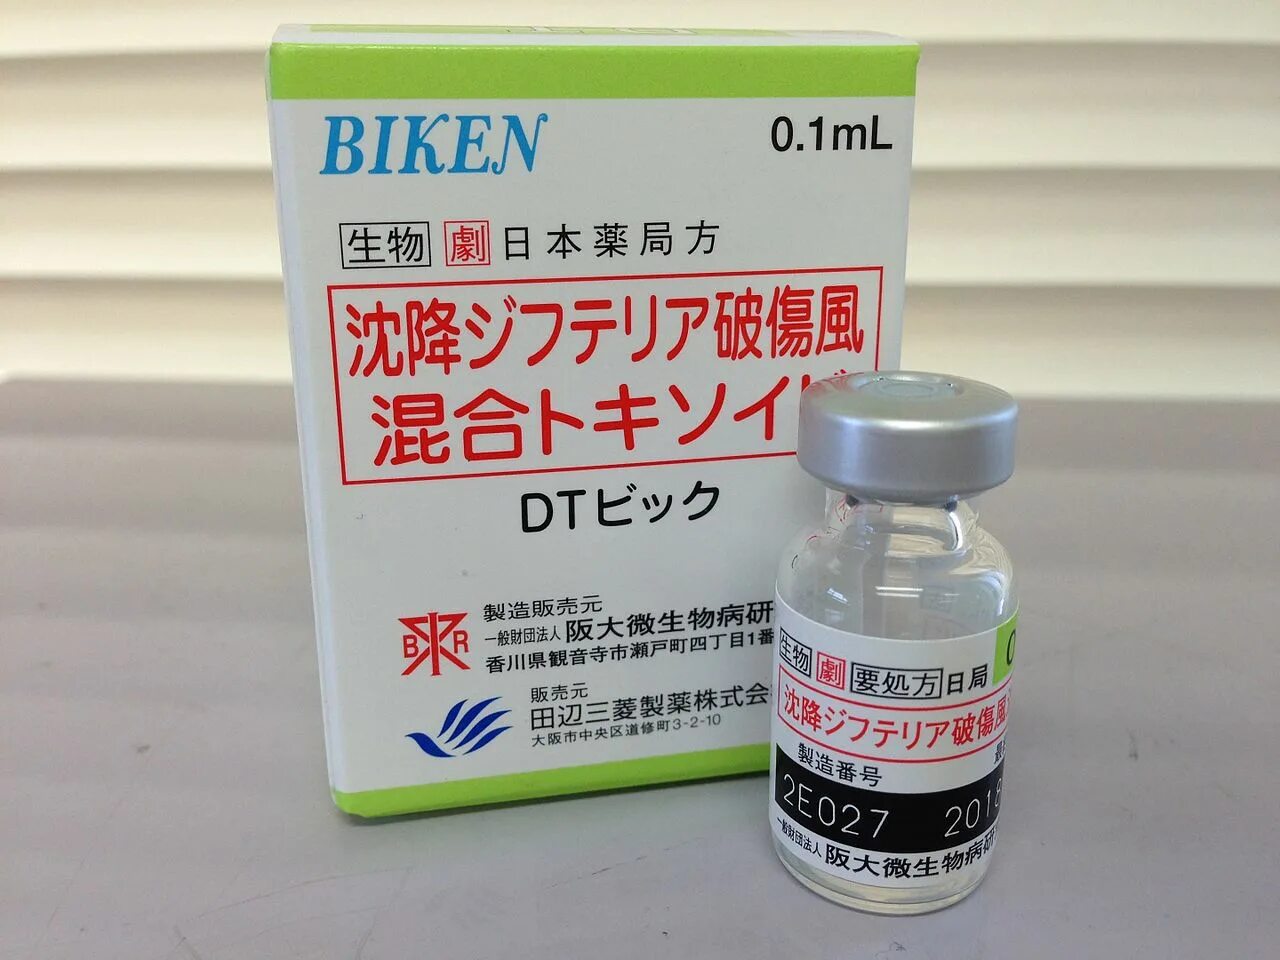 Вакцины японии. Японские вакцины. Рисовая вакцина на японцах. Японские вакцины витамины. DT-вакцина.